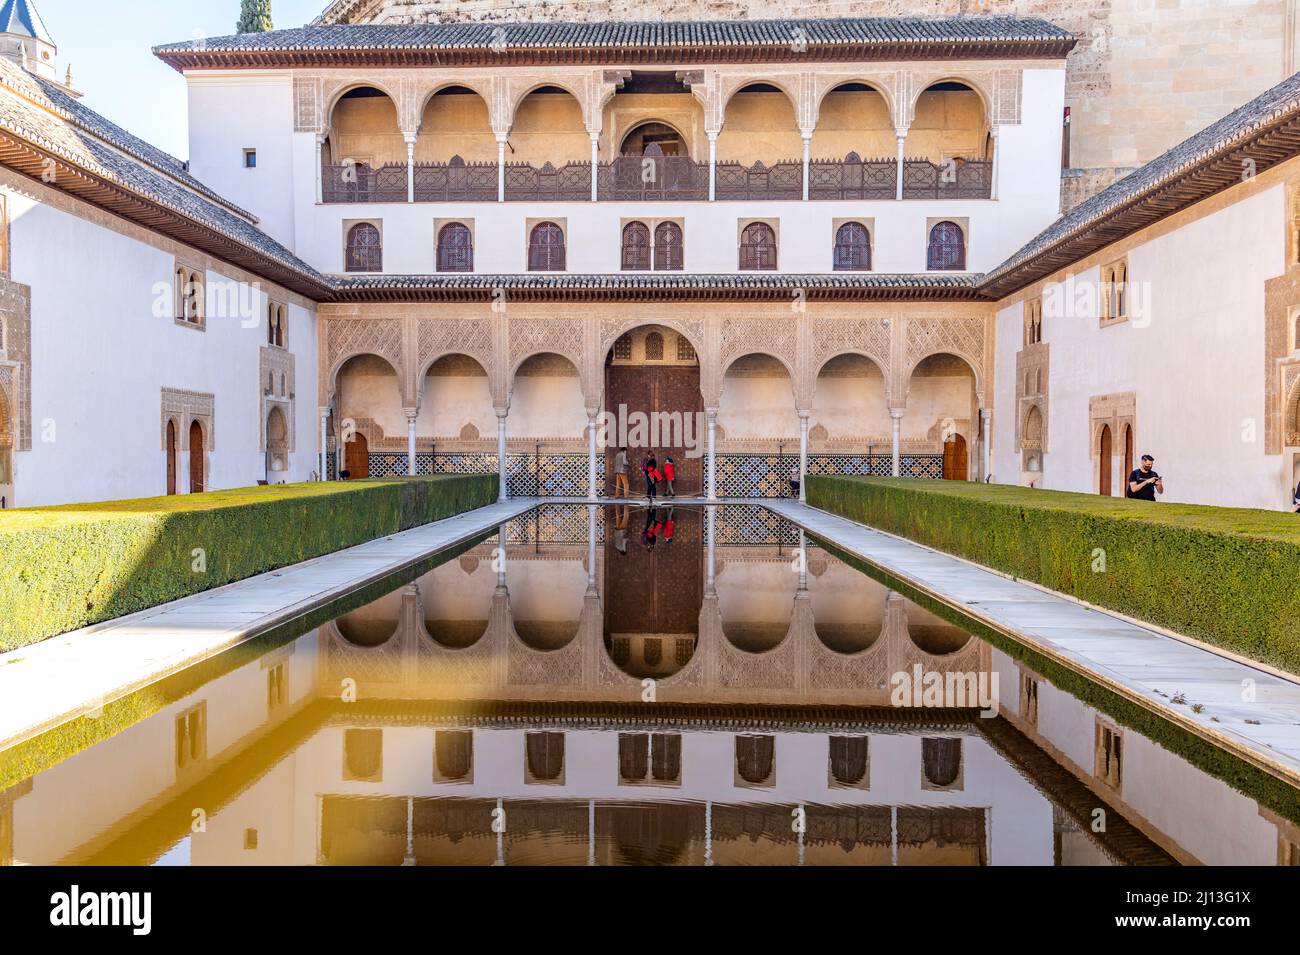 Der Myrtenhof, Welterbe Alhambra a Granada, Andalusia, spagnolo | la Corte dei Mirti, patrimonio mondiale dell'Alhambra a Granada, Andalusia, Spagna Foto Stock